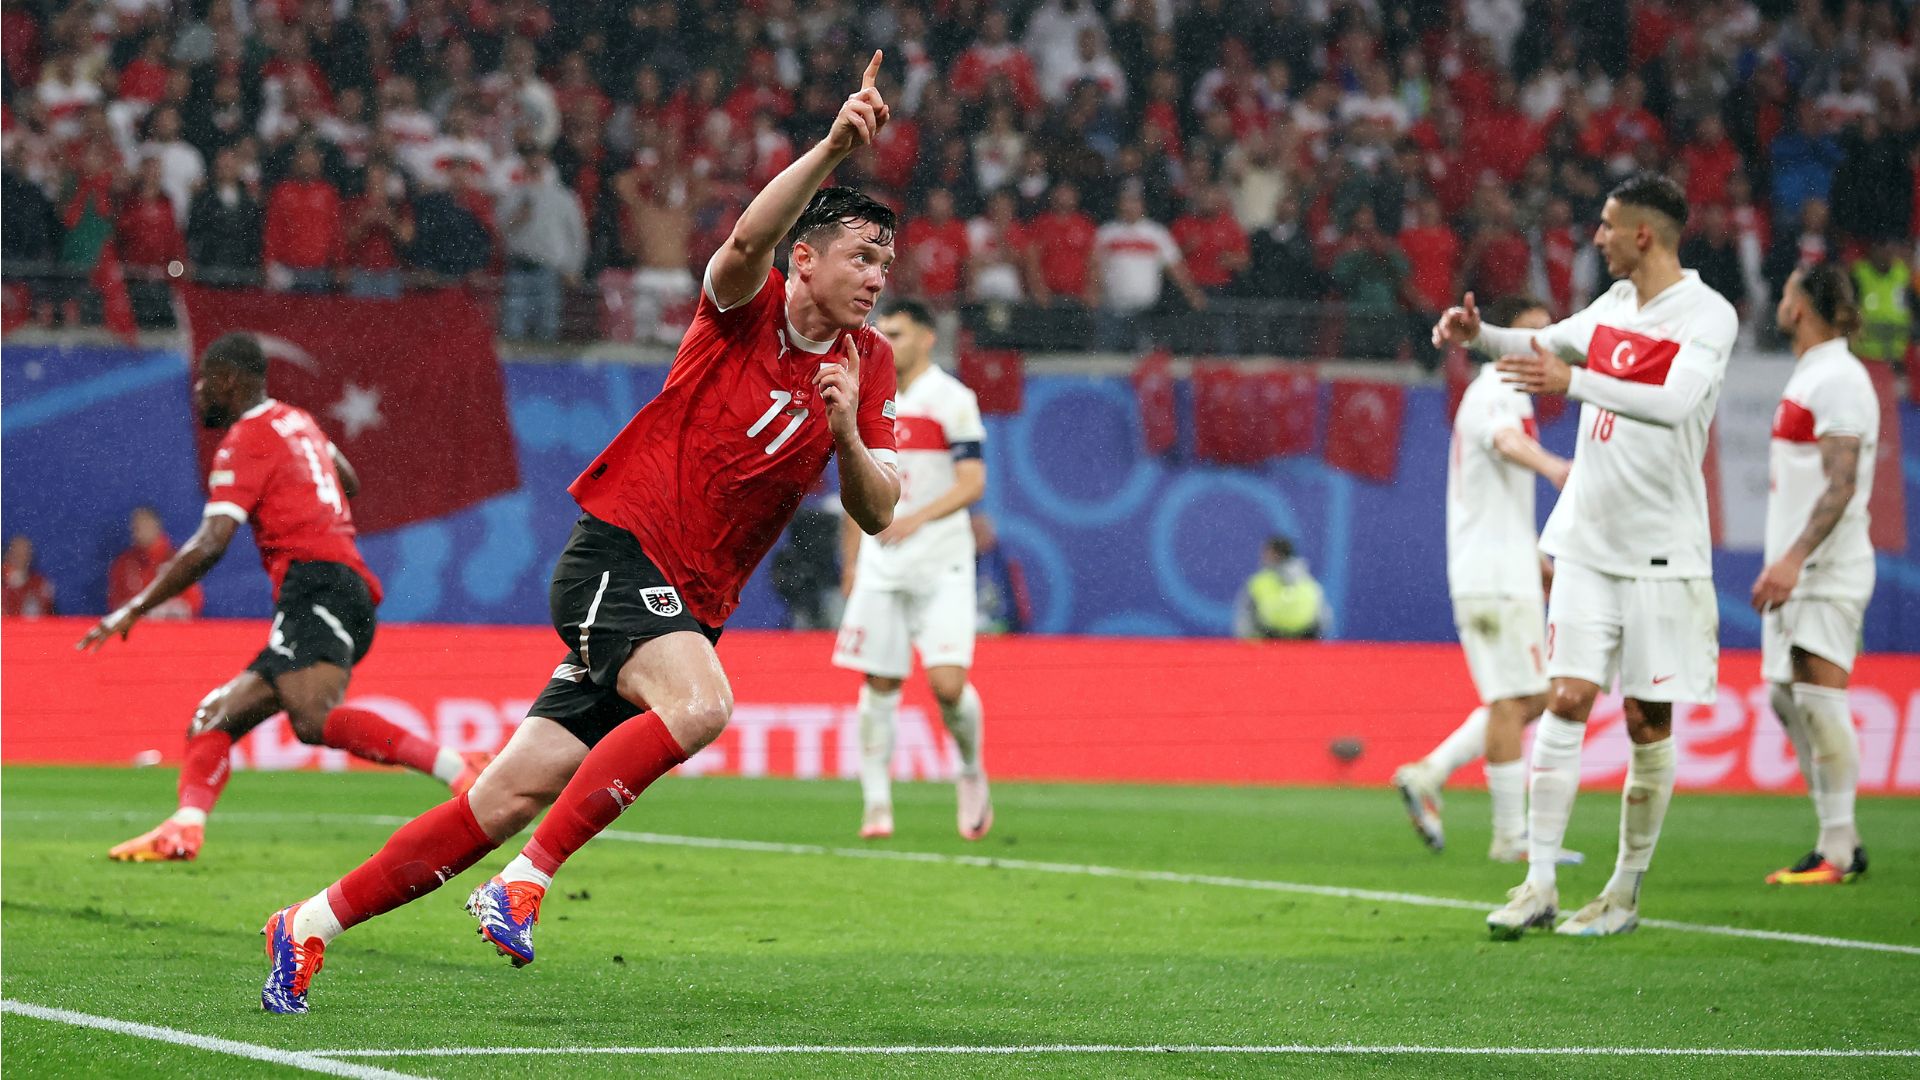 Áustria descontou na segunda etapa, mas não conseguiu evitar a derrota (Crédito: Getty Images)